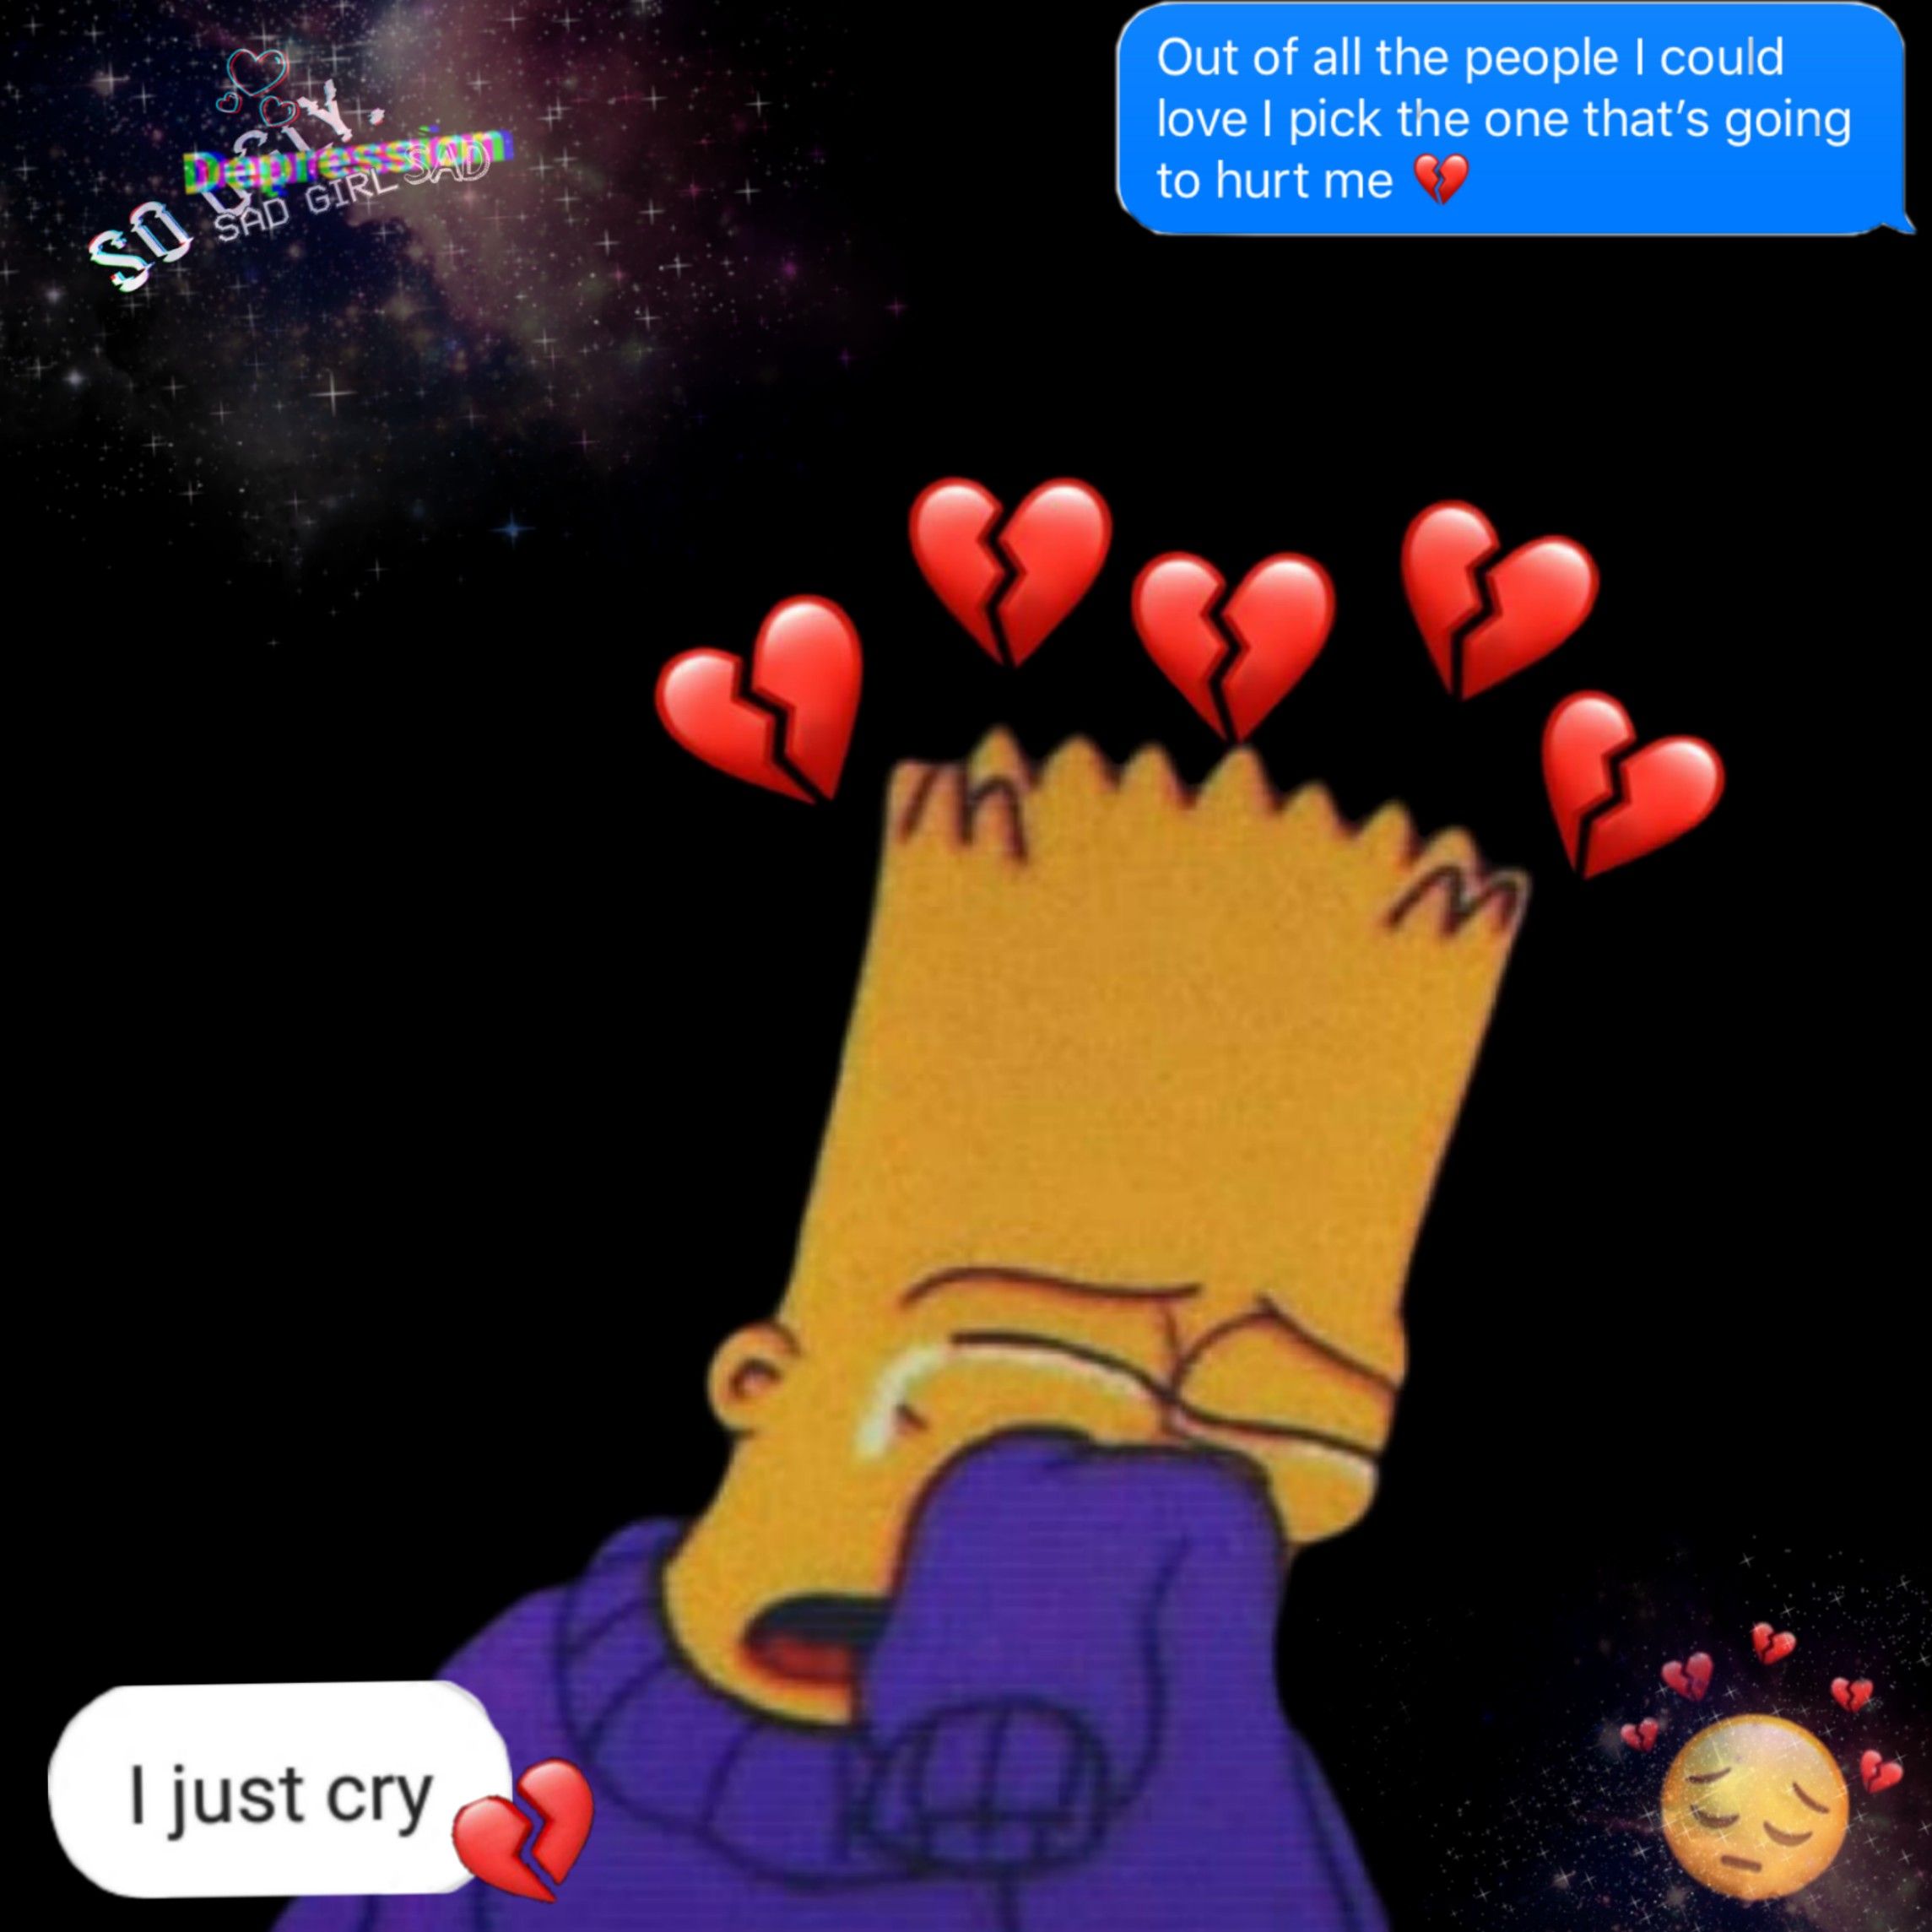 Depressed Simpsons Wallpapers